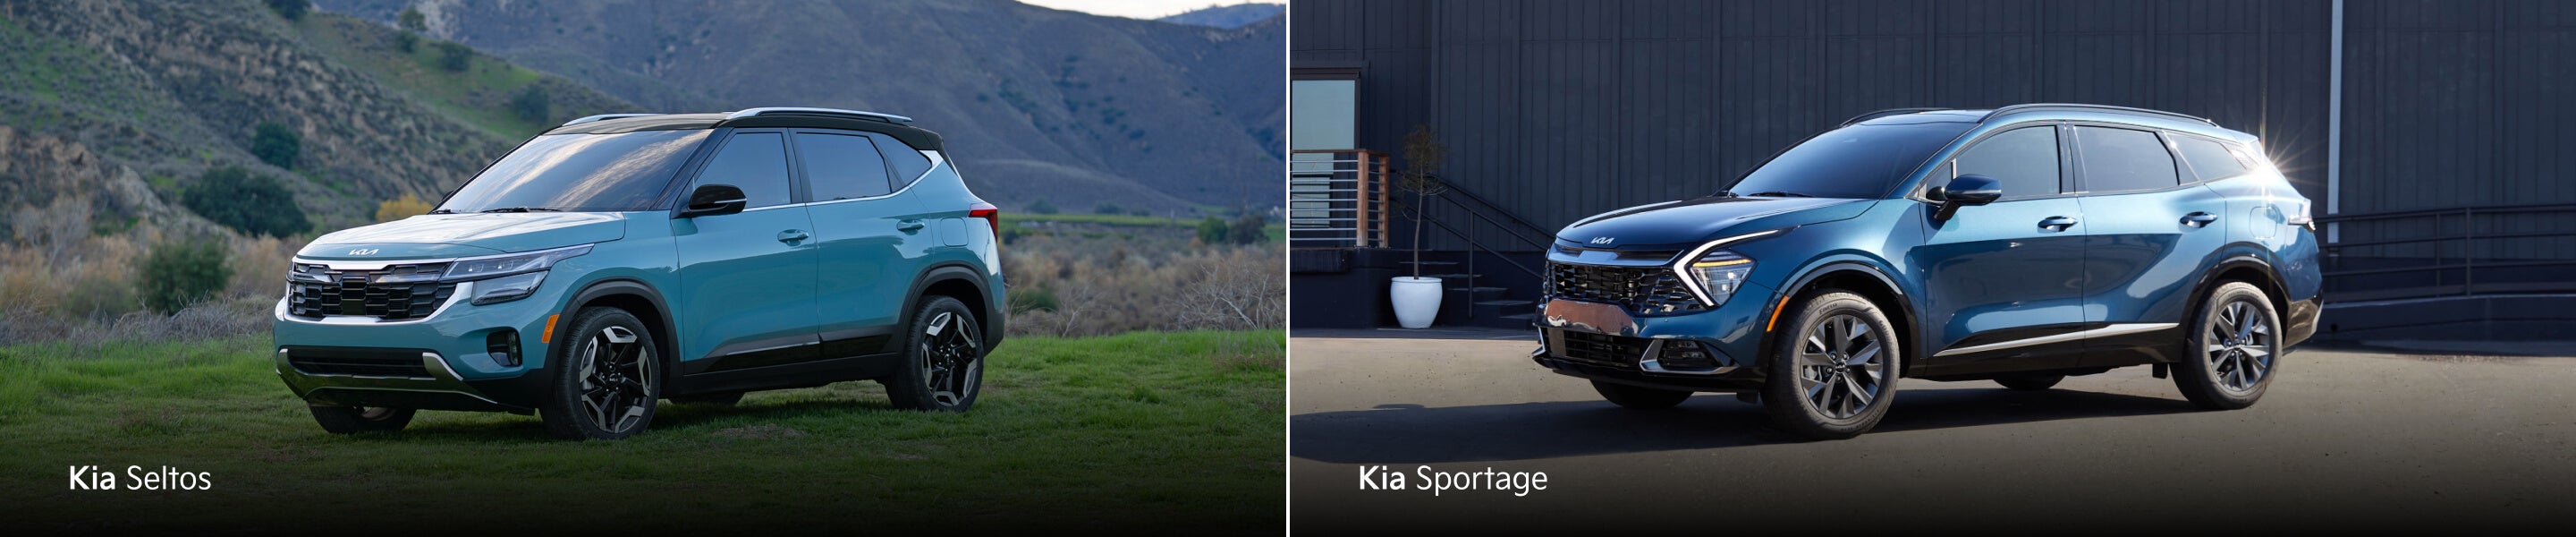 Kia Sportage vs Kia Seltos Image